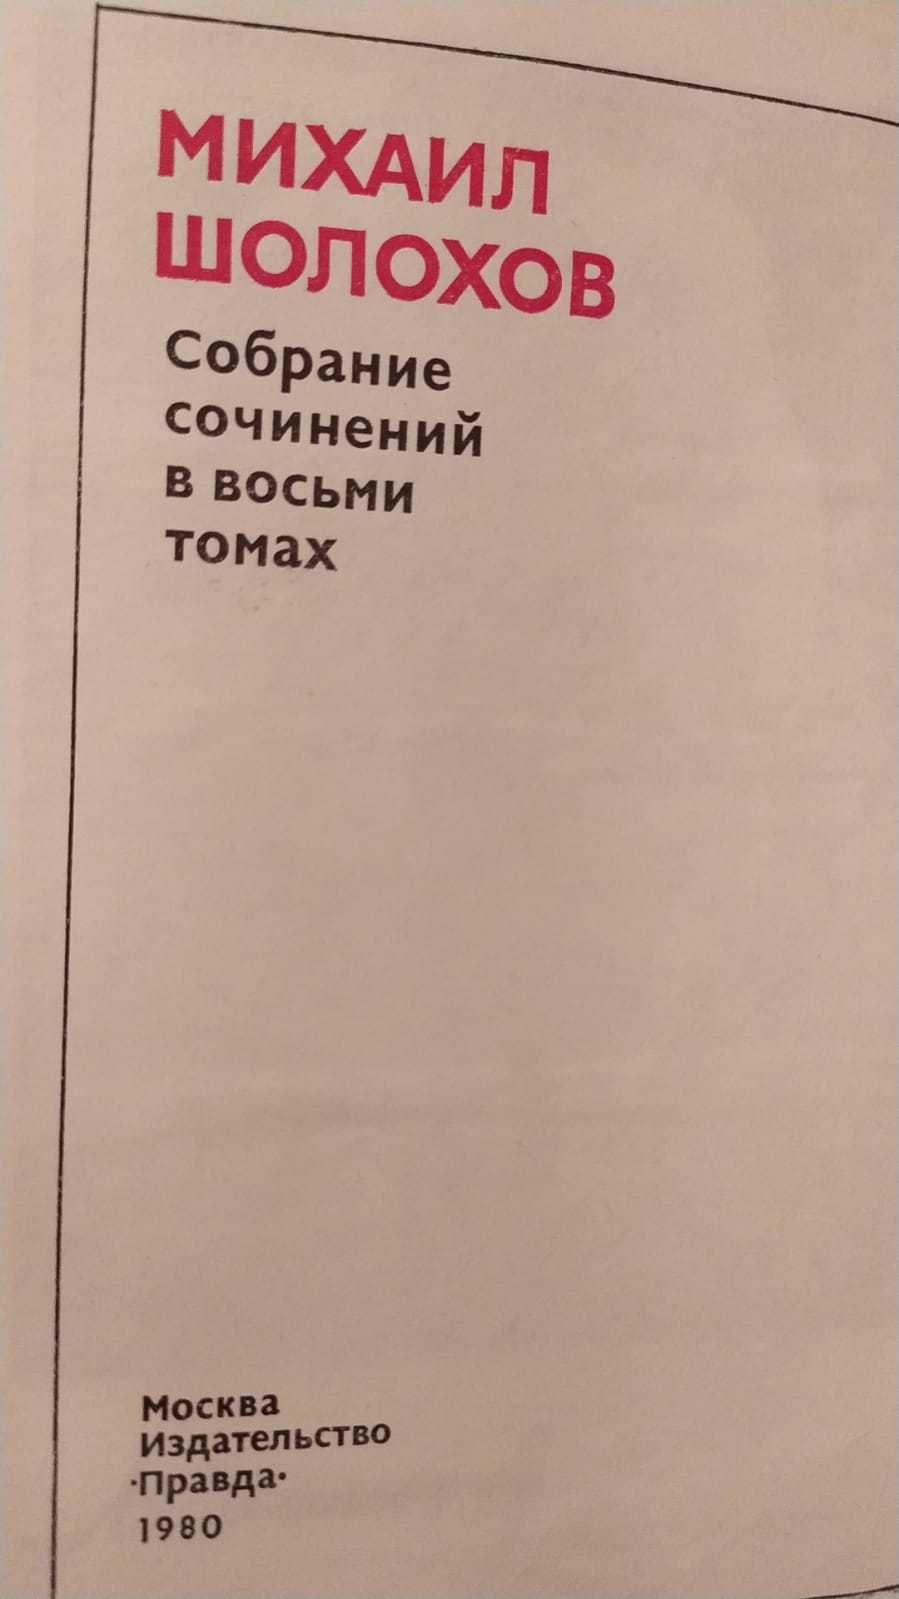 Михаил Шолохов - собрание сочиений в 8 томах